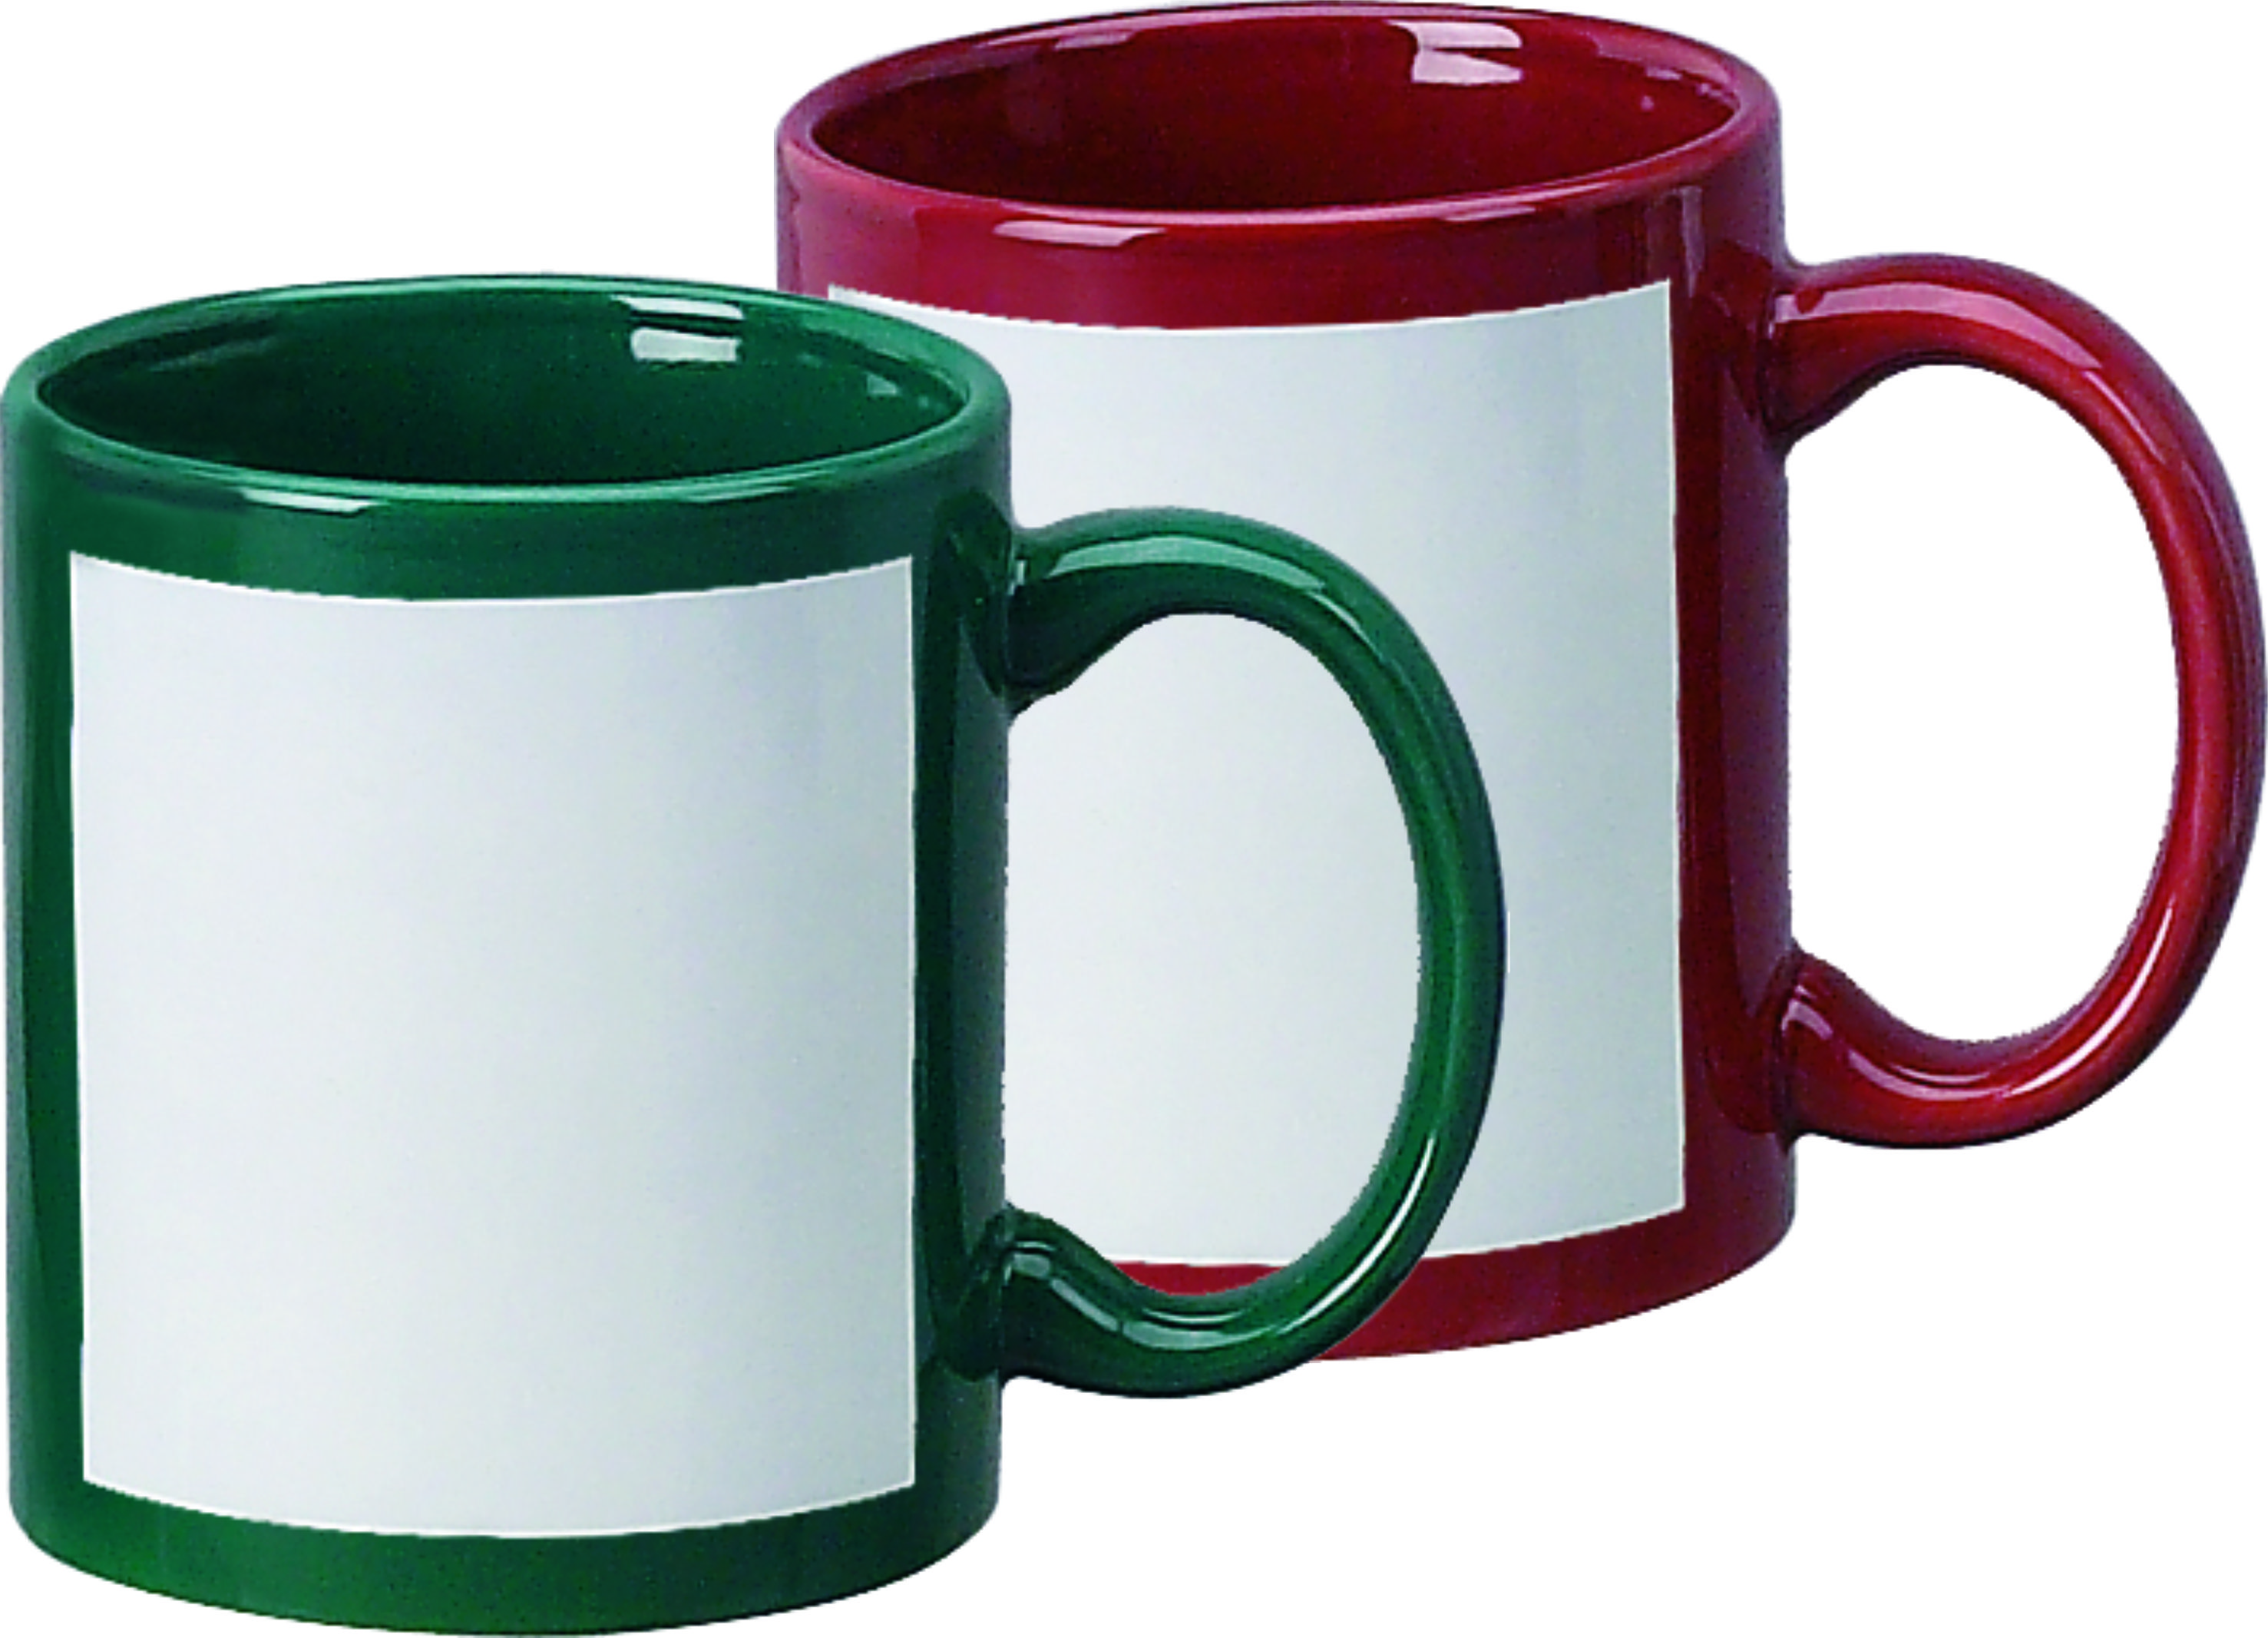 Sublimation Mug 11oz Color Mug with White Patch, sublimation colored mug  with white patch, Hard Coat sublimation mug, Sublimation mugs, 11 oz sublimation  mugs, 15 oz sublimation mugs, rim handle sublimation mug